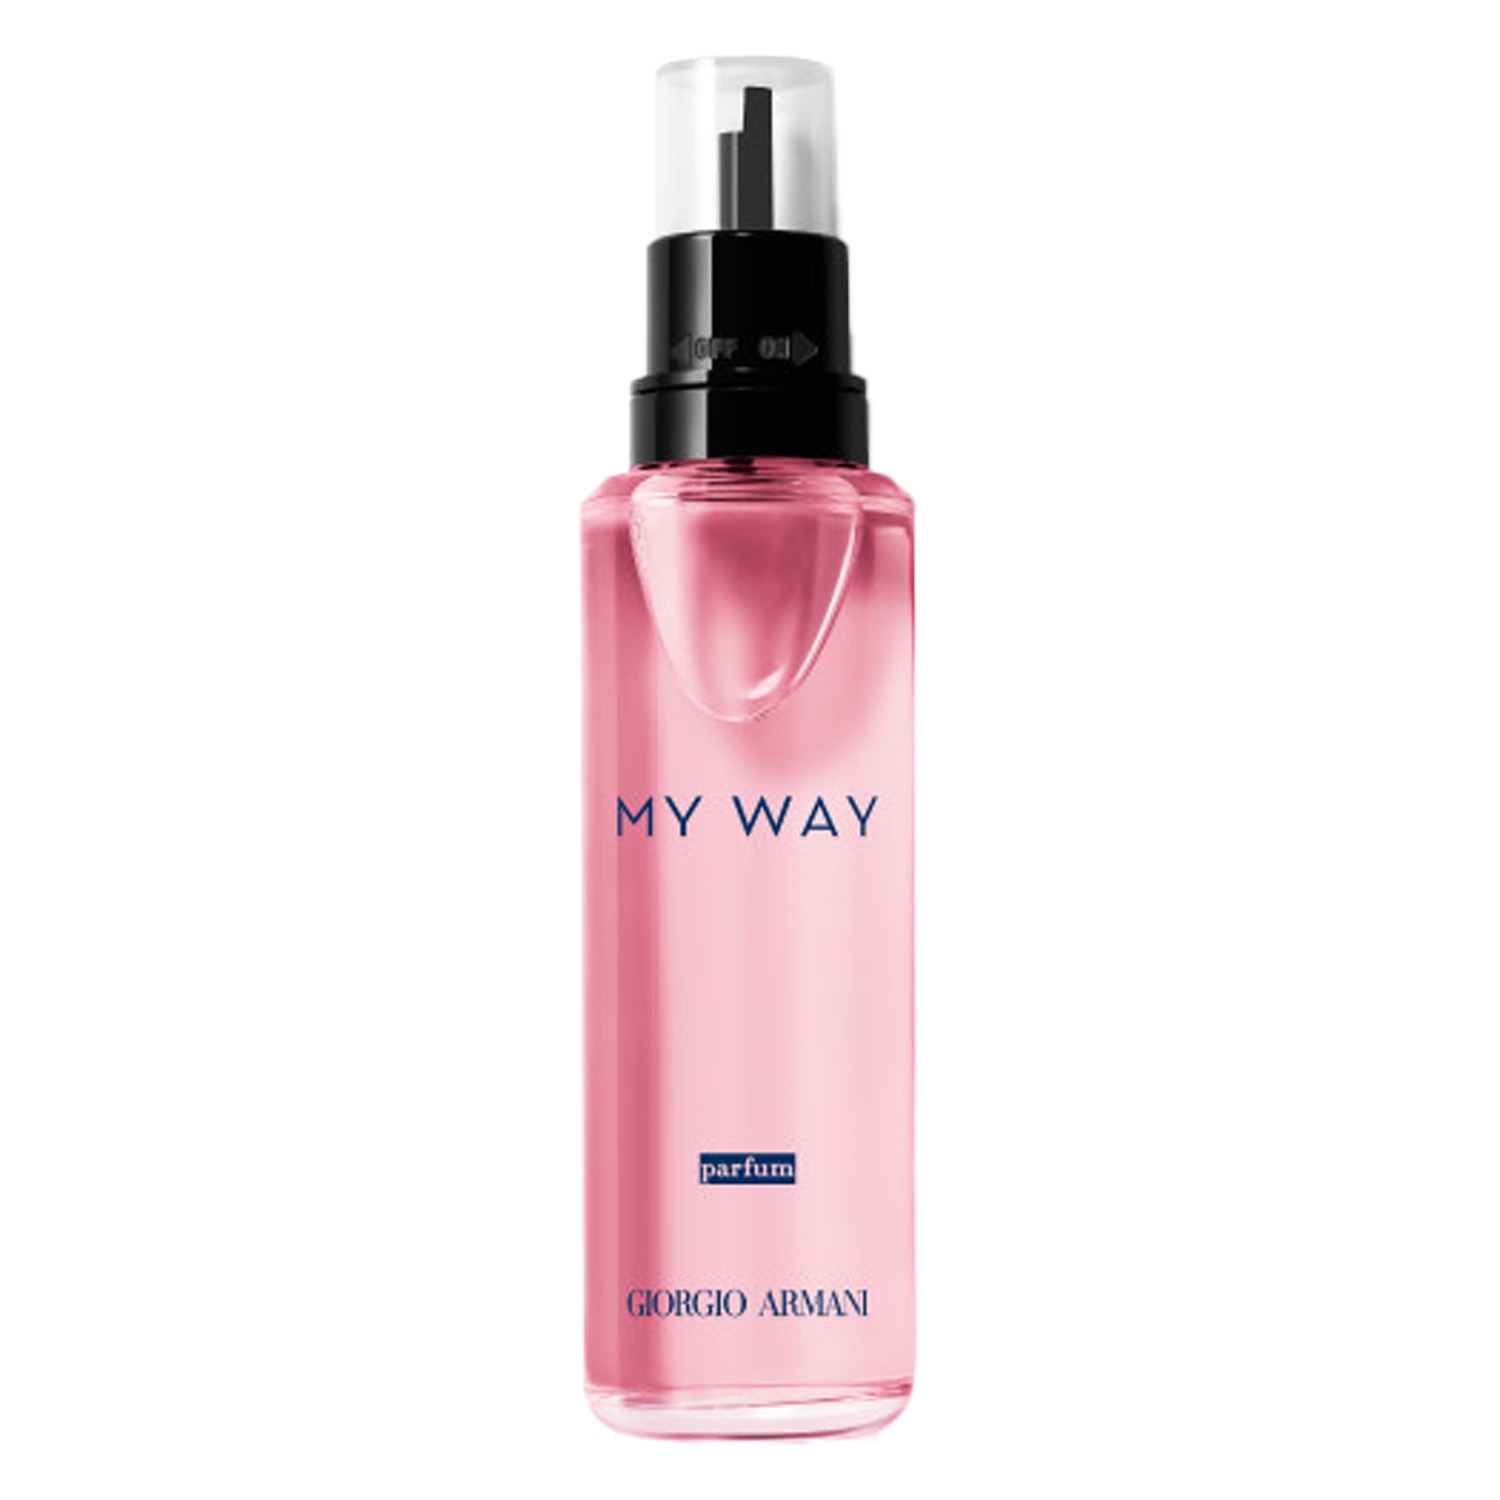 Produktbild von MY WAY - Parfum Refill